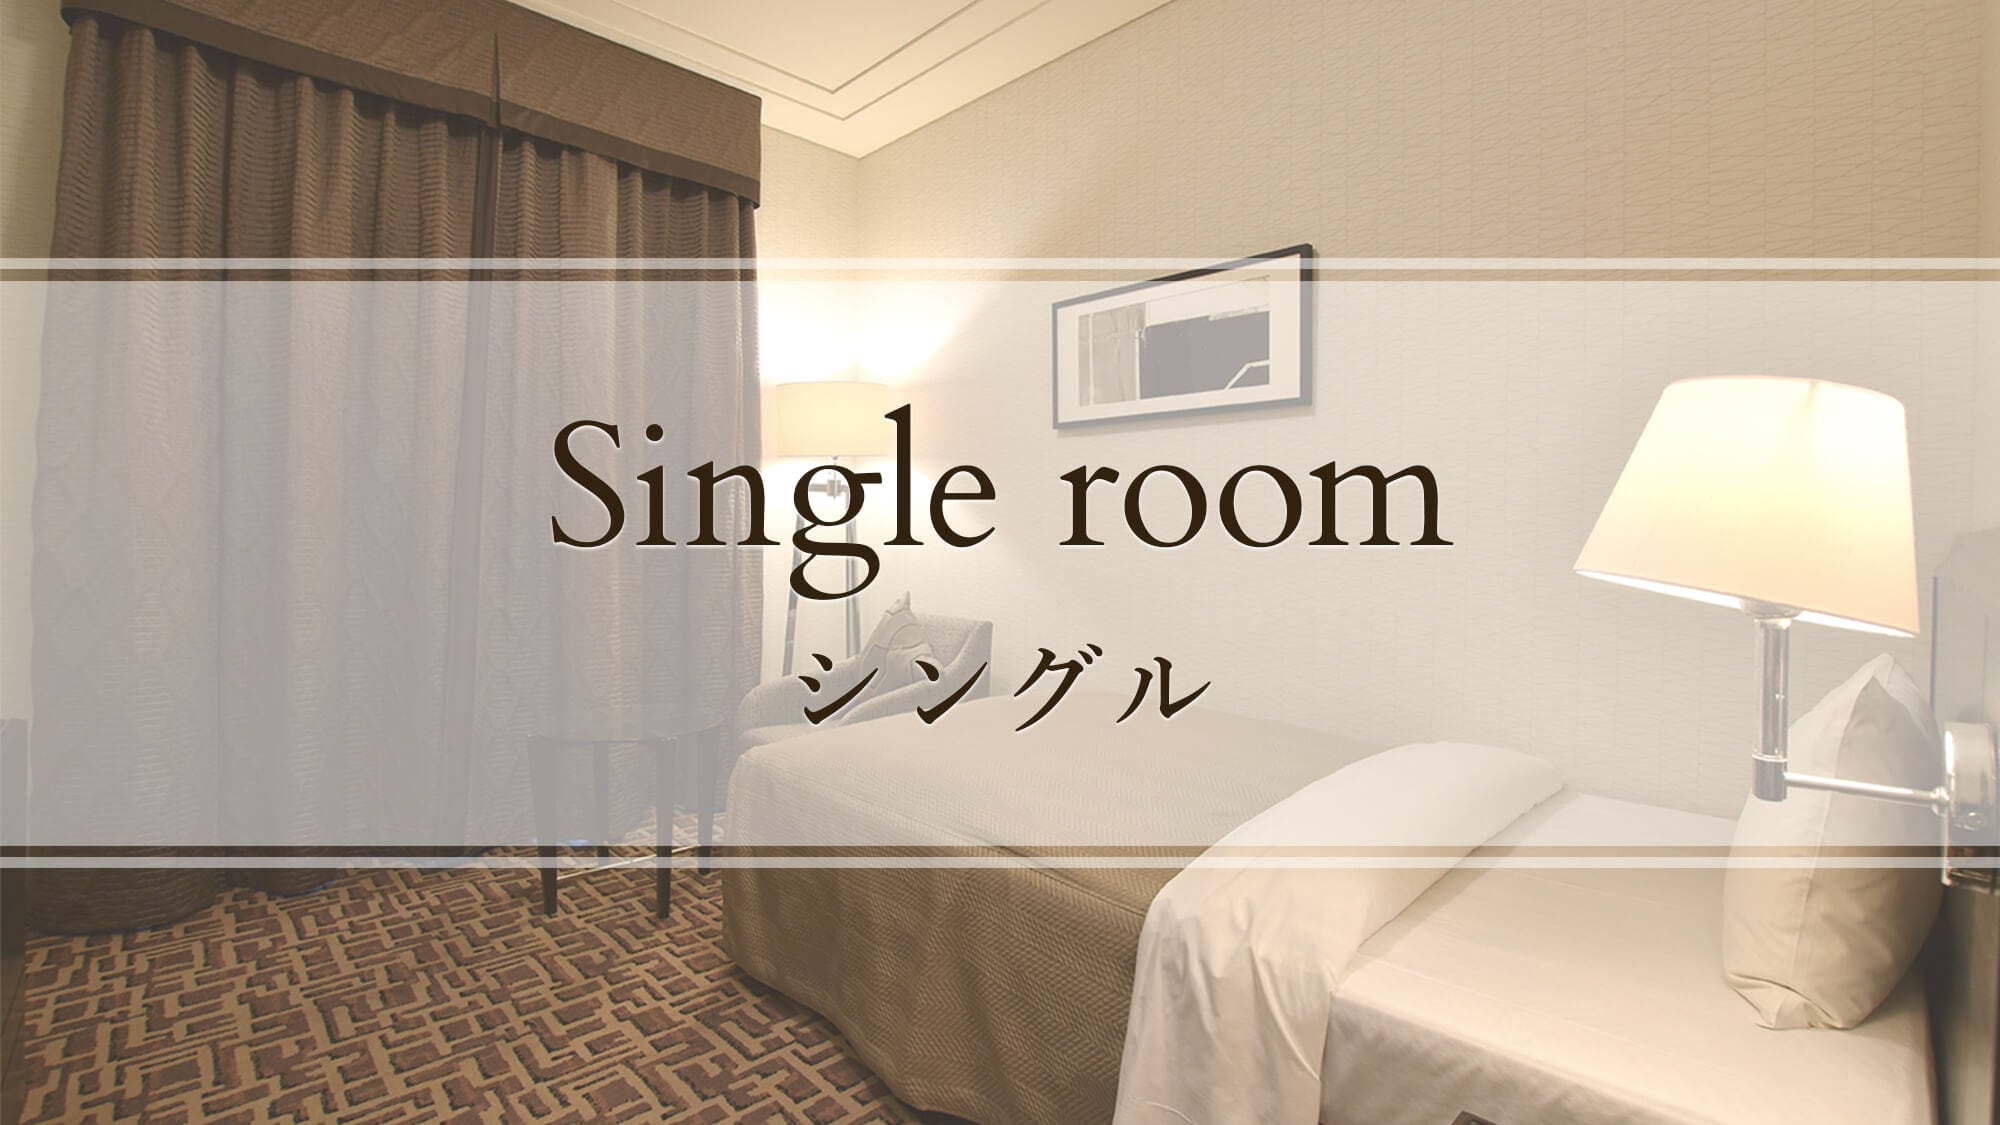 【싱글】Single room